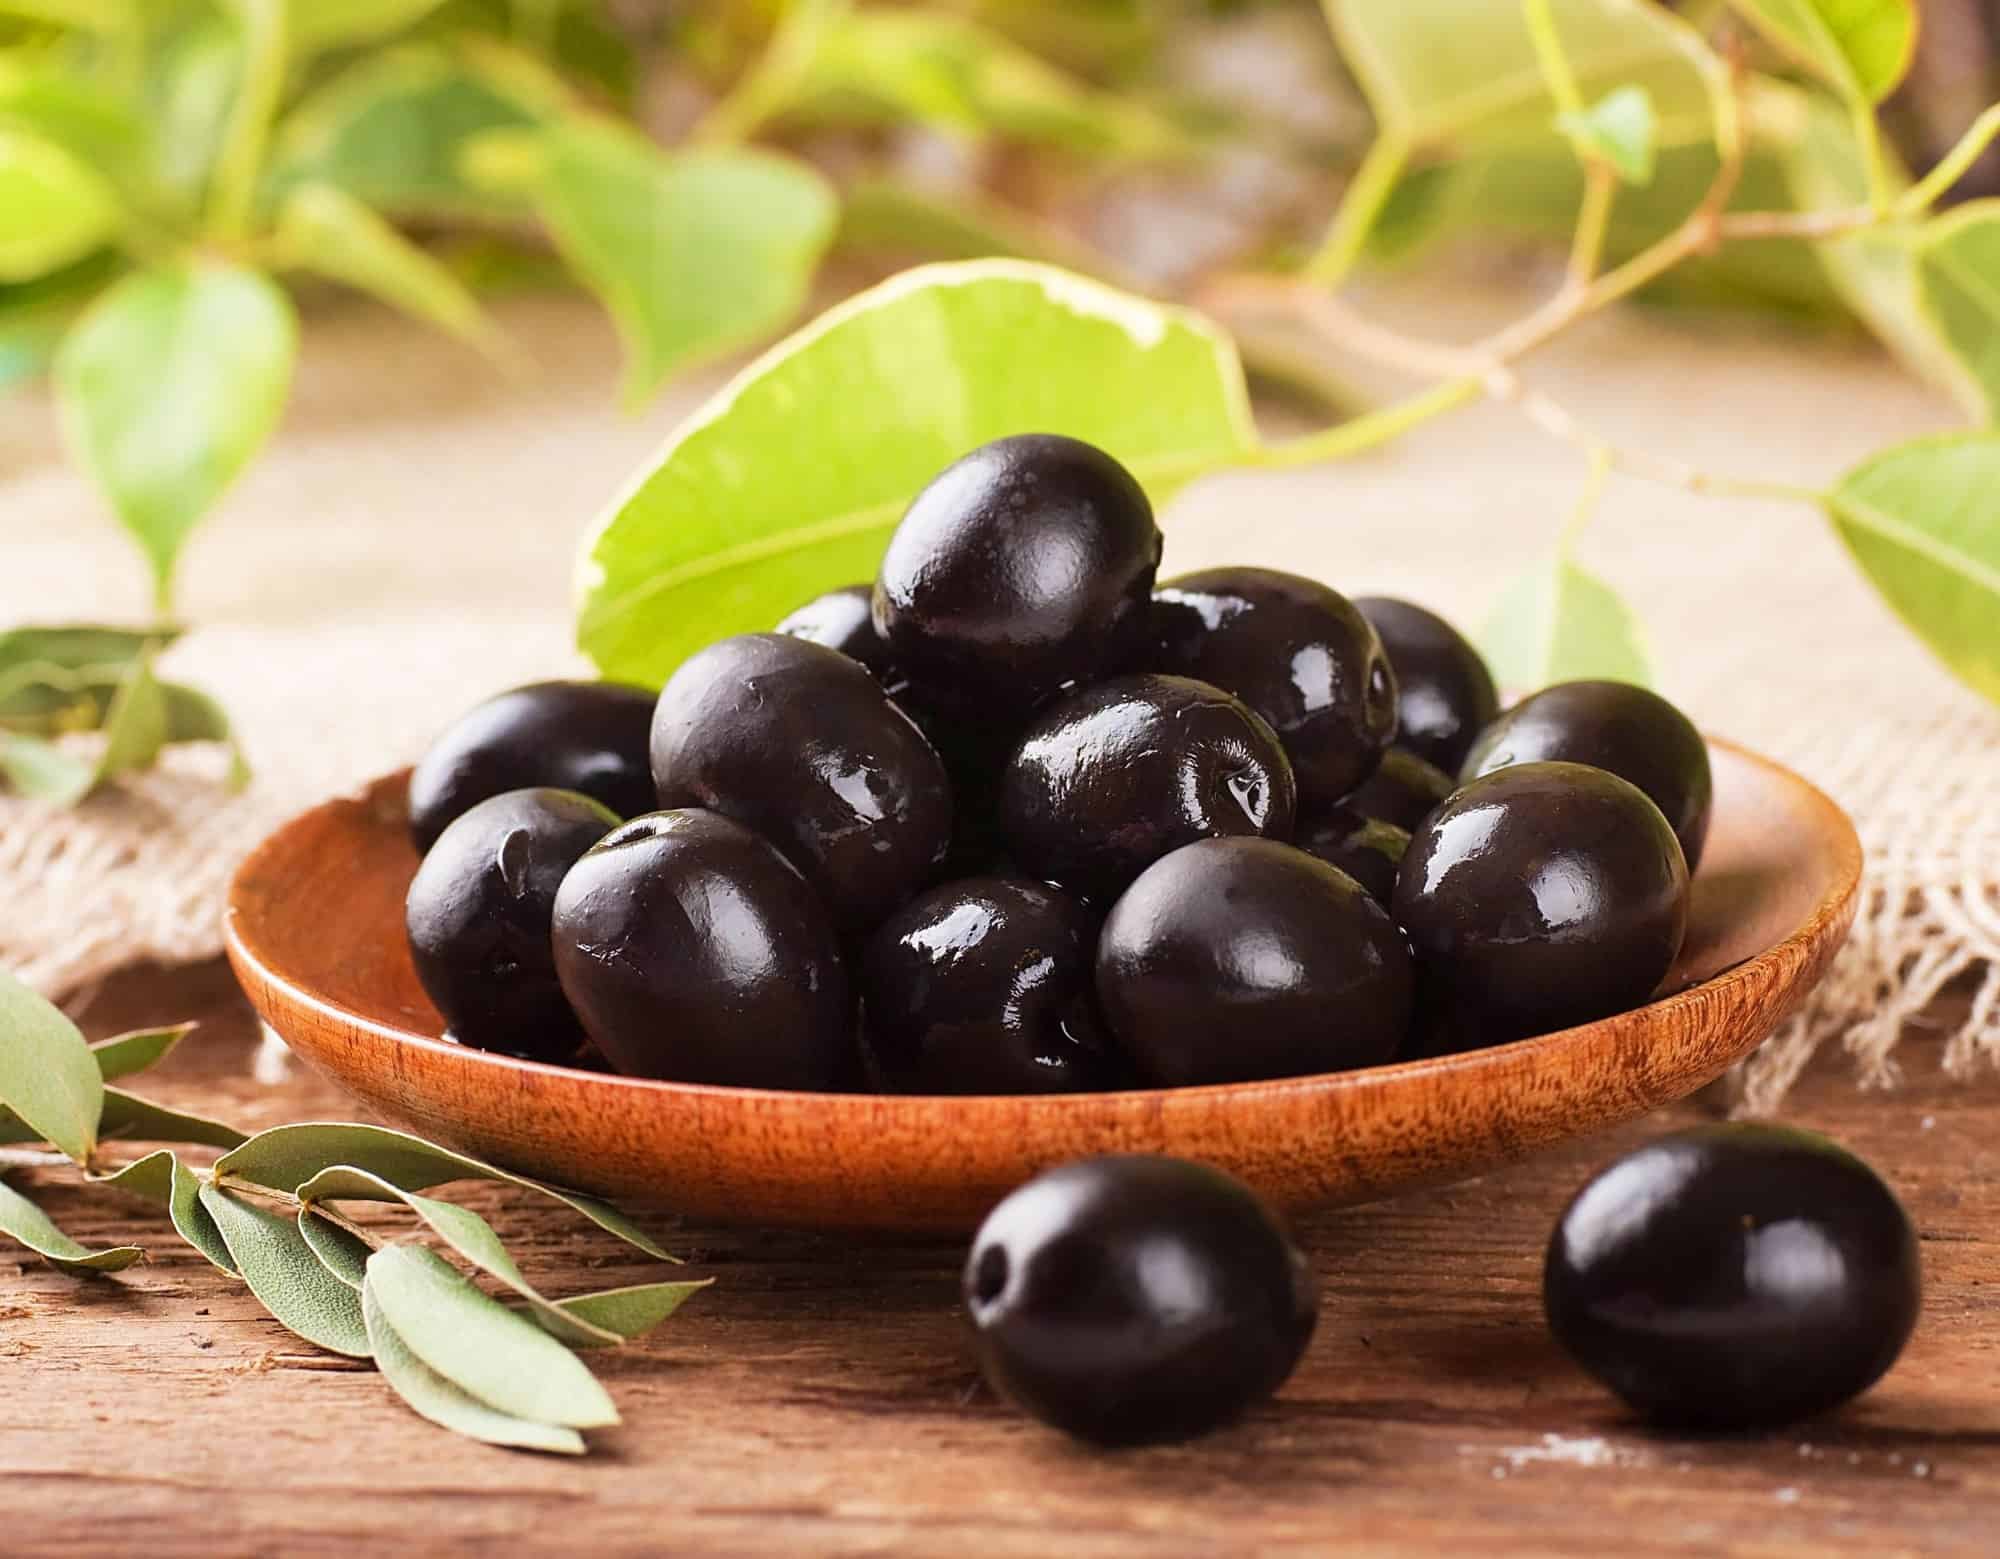 8 فوائد تجعلك تتناول الزيتون الأسود يوميا